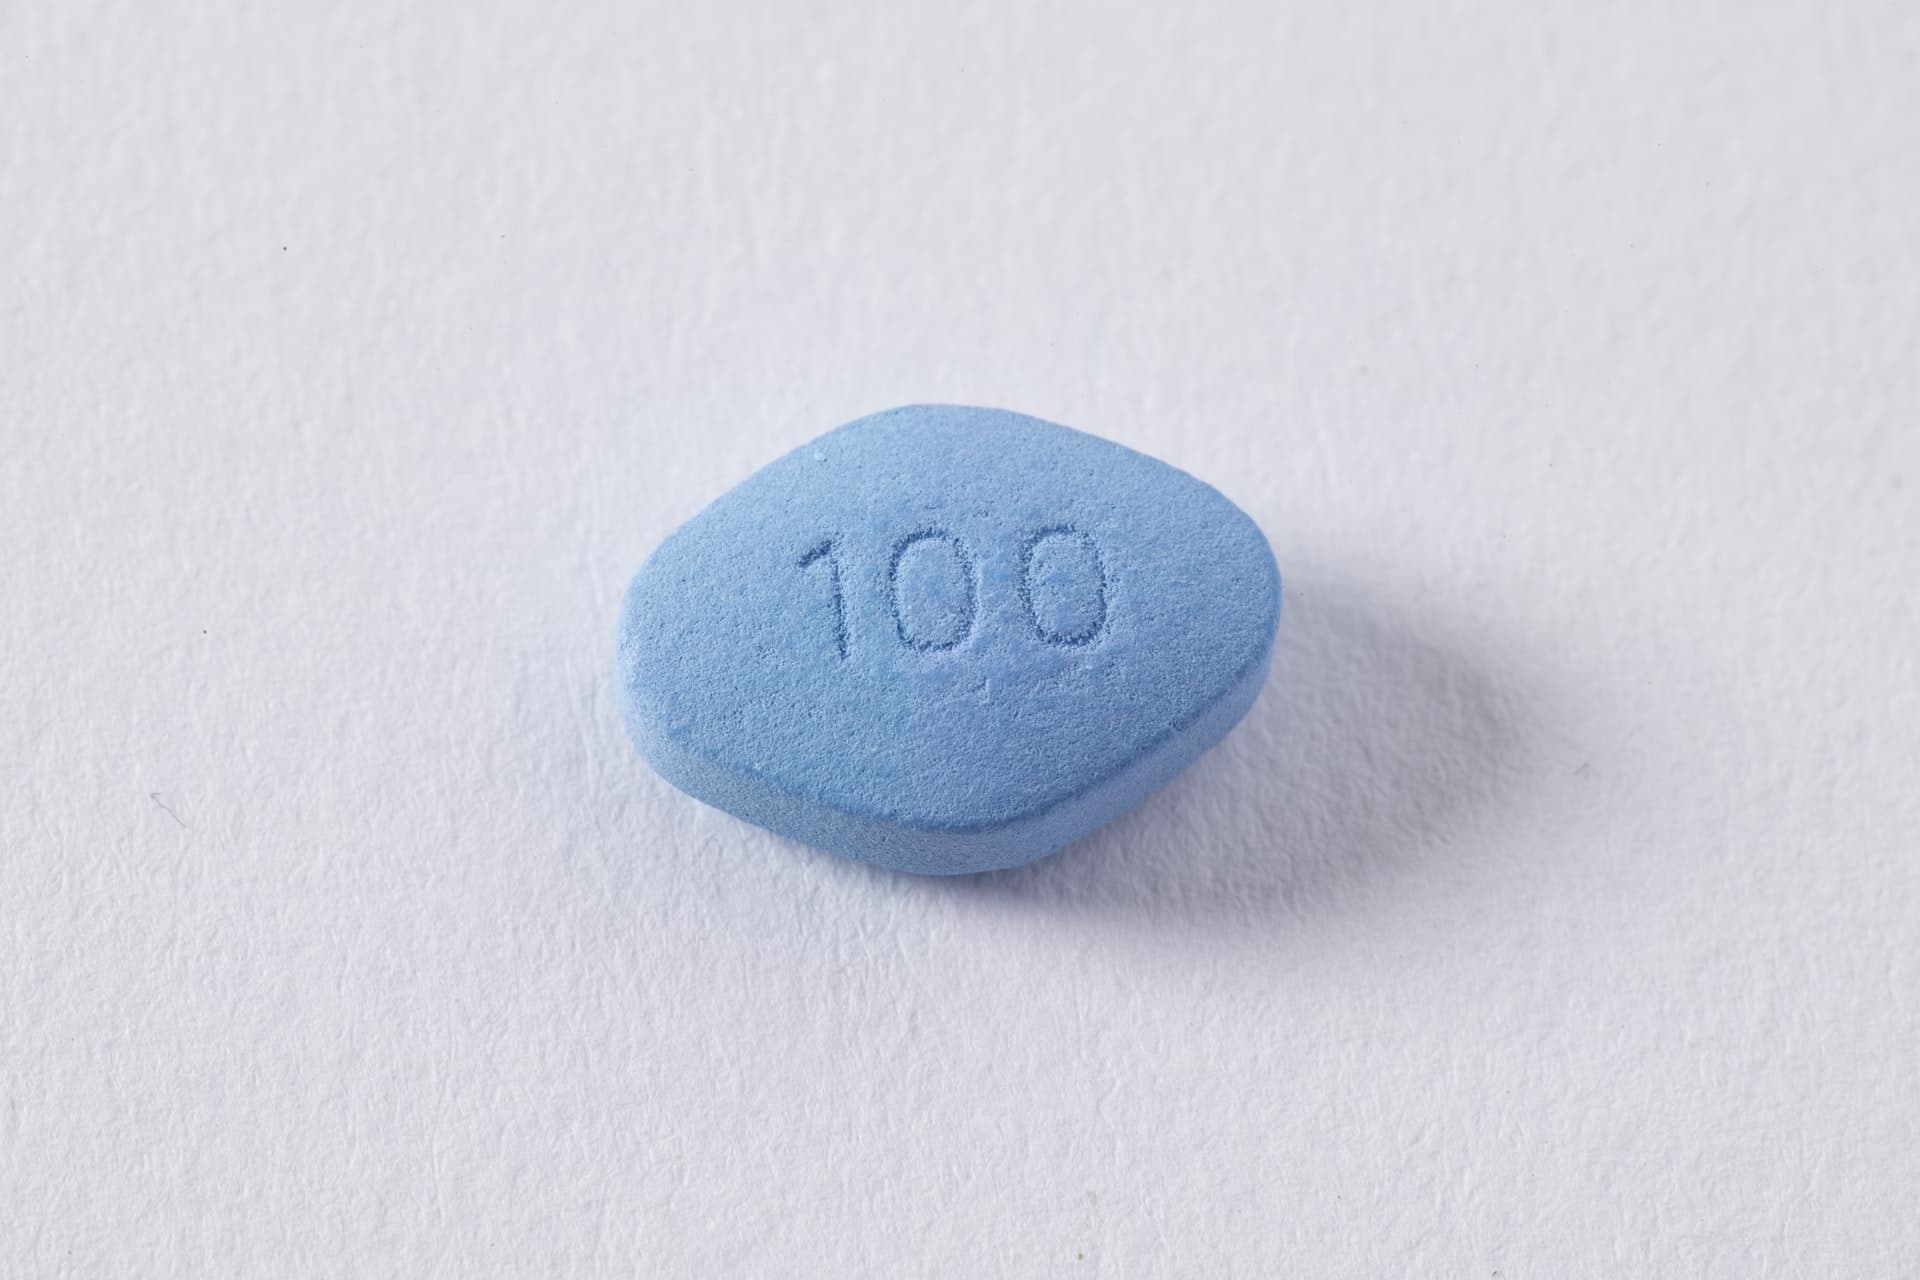 Viagra 100mg tablet